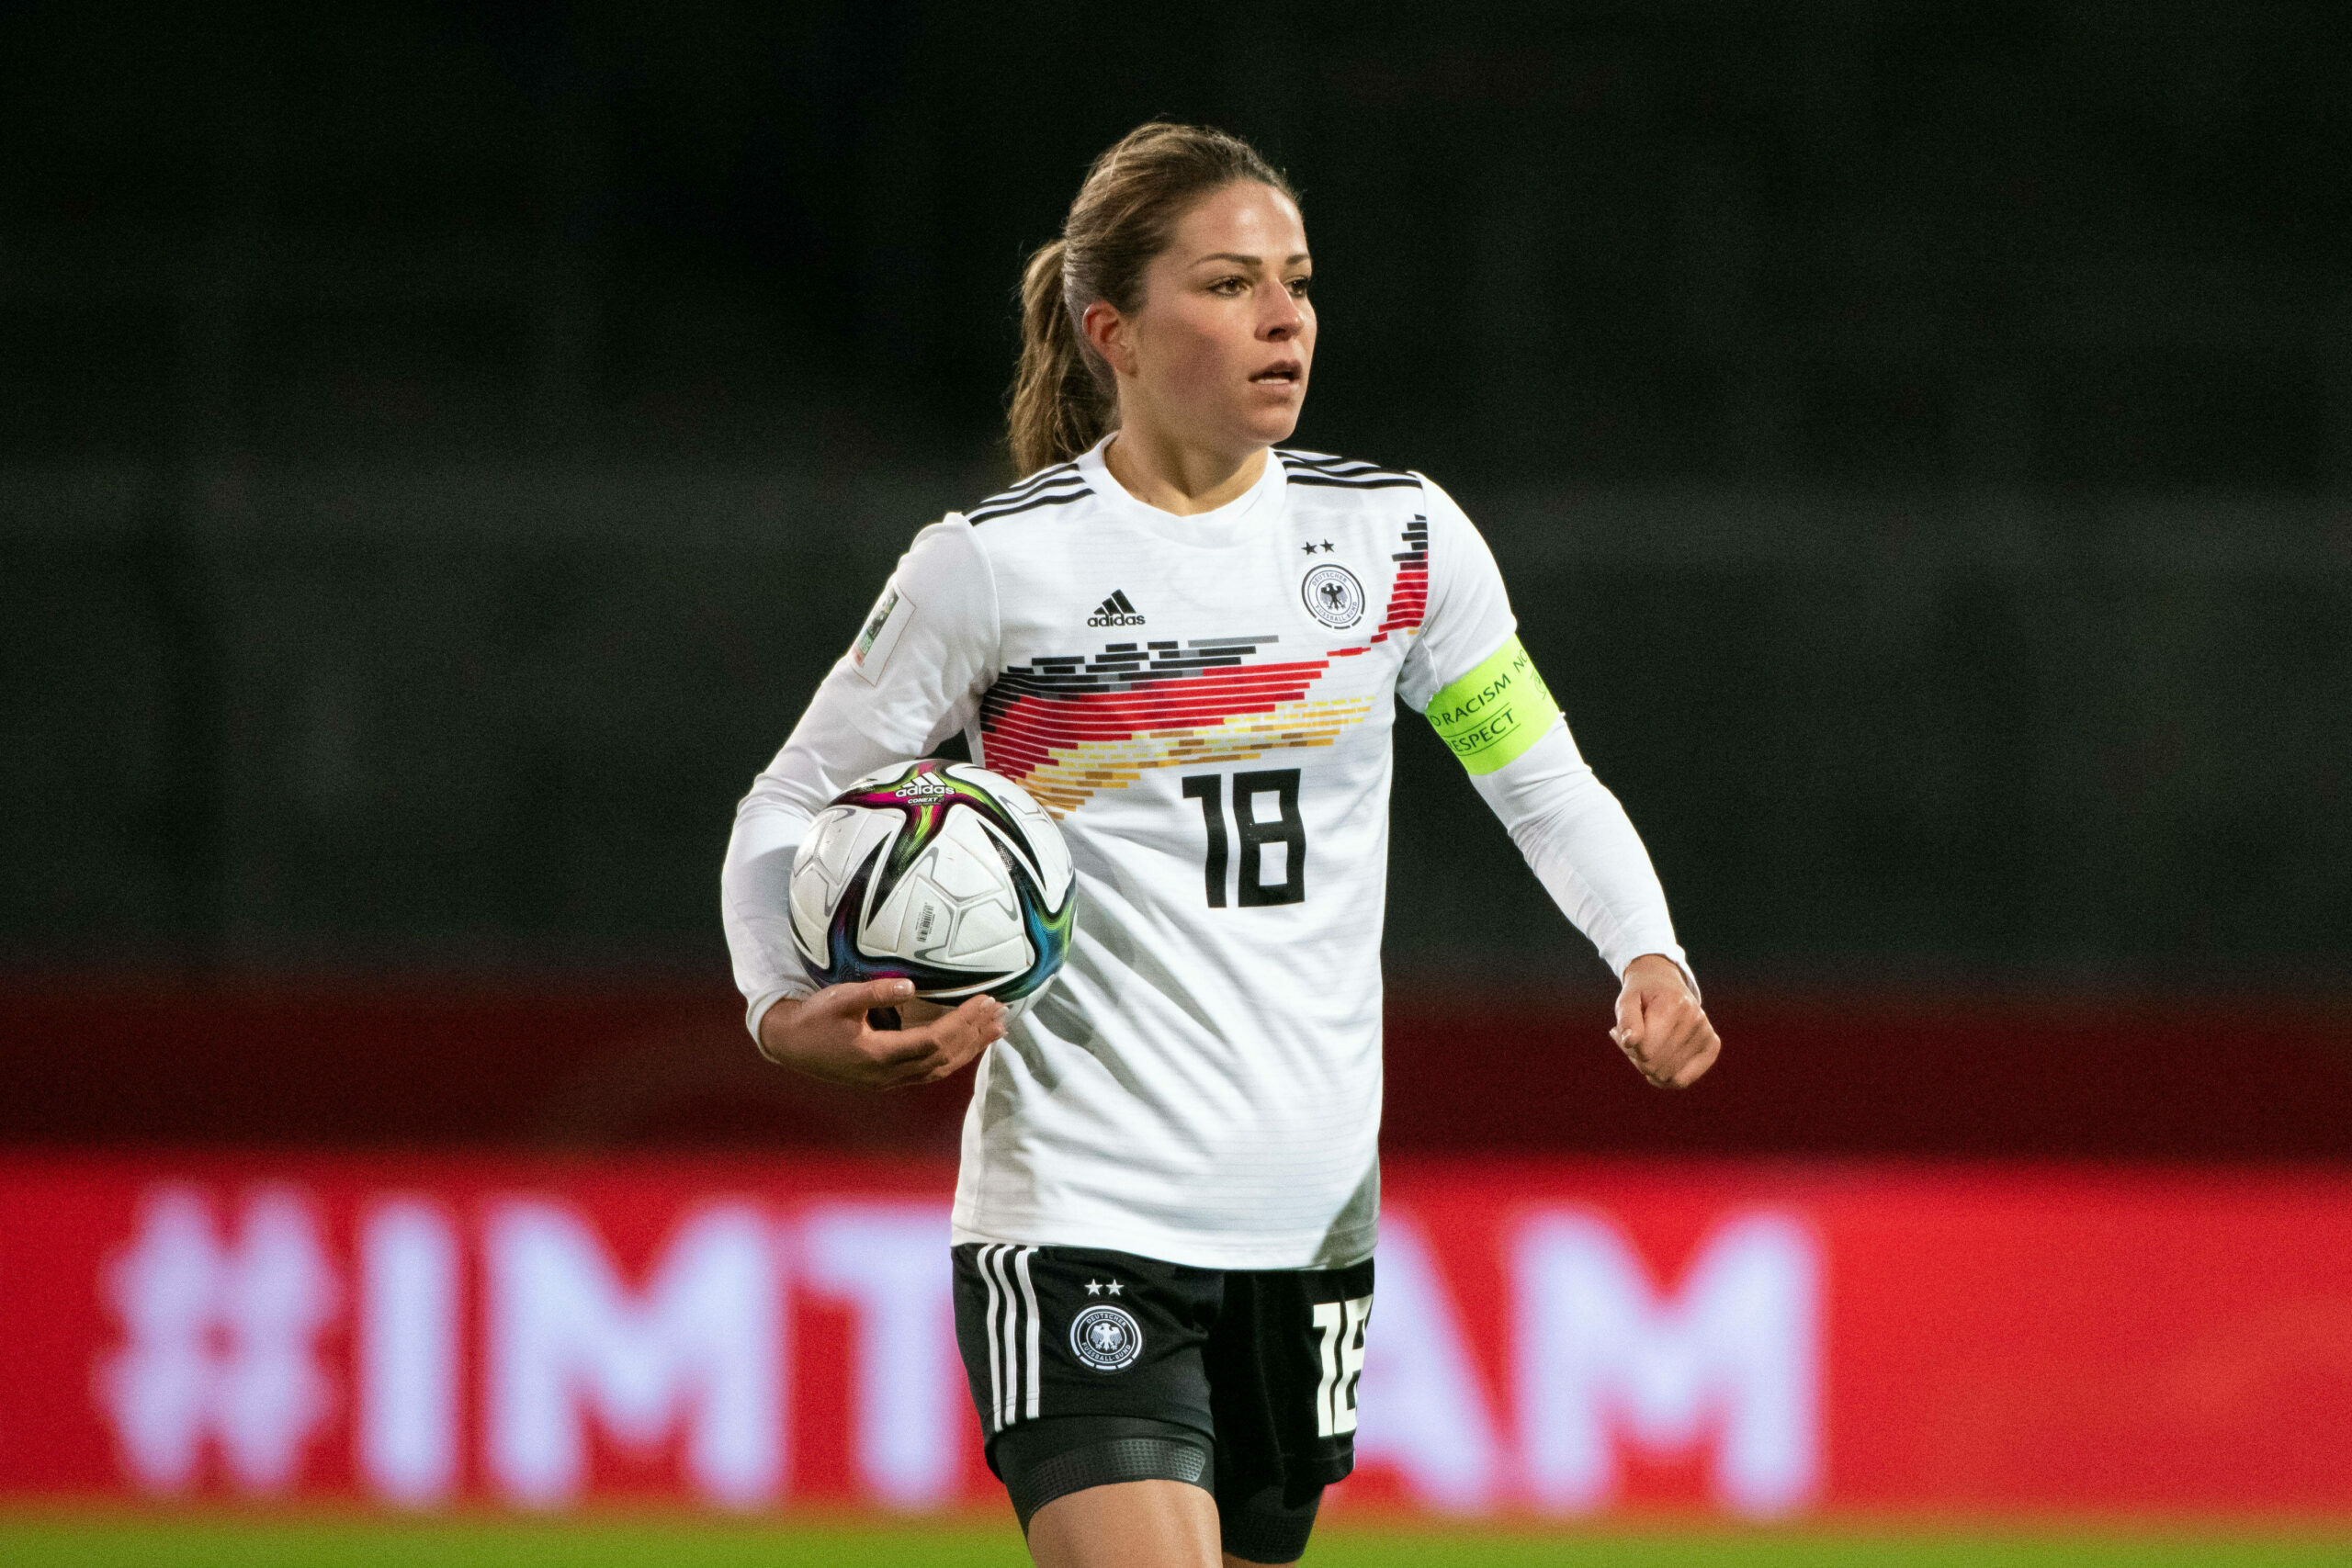 Melanie Leupolz trug schon die Kapitänsbinde der Nationalmannschaft. Die EM verpasst sie aufgrund ihrer Schwangerschaft.